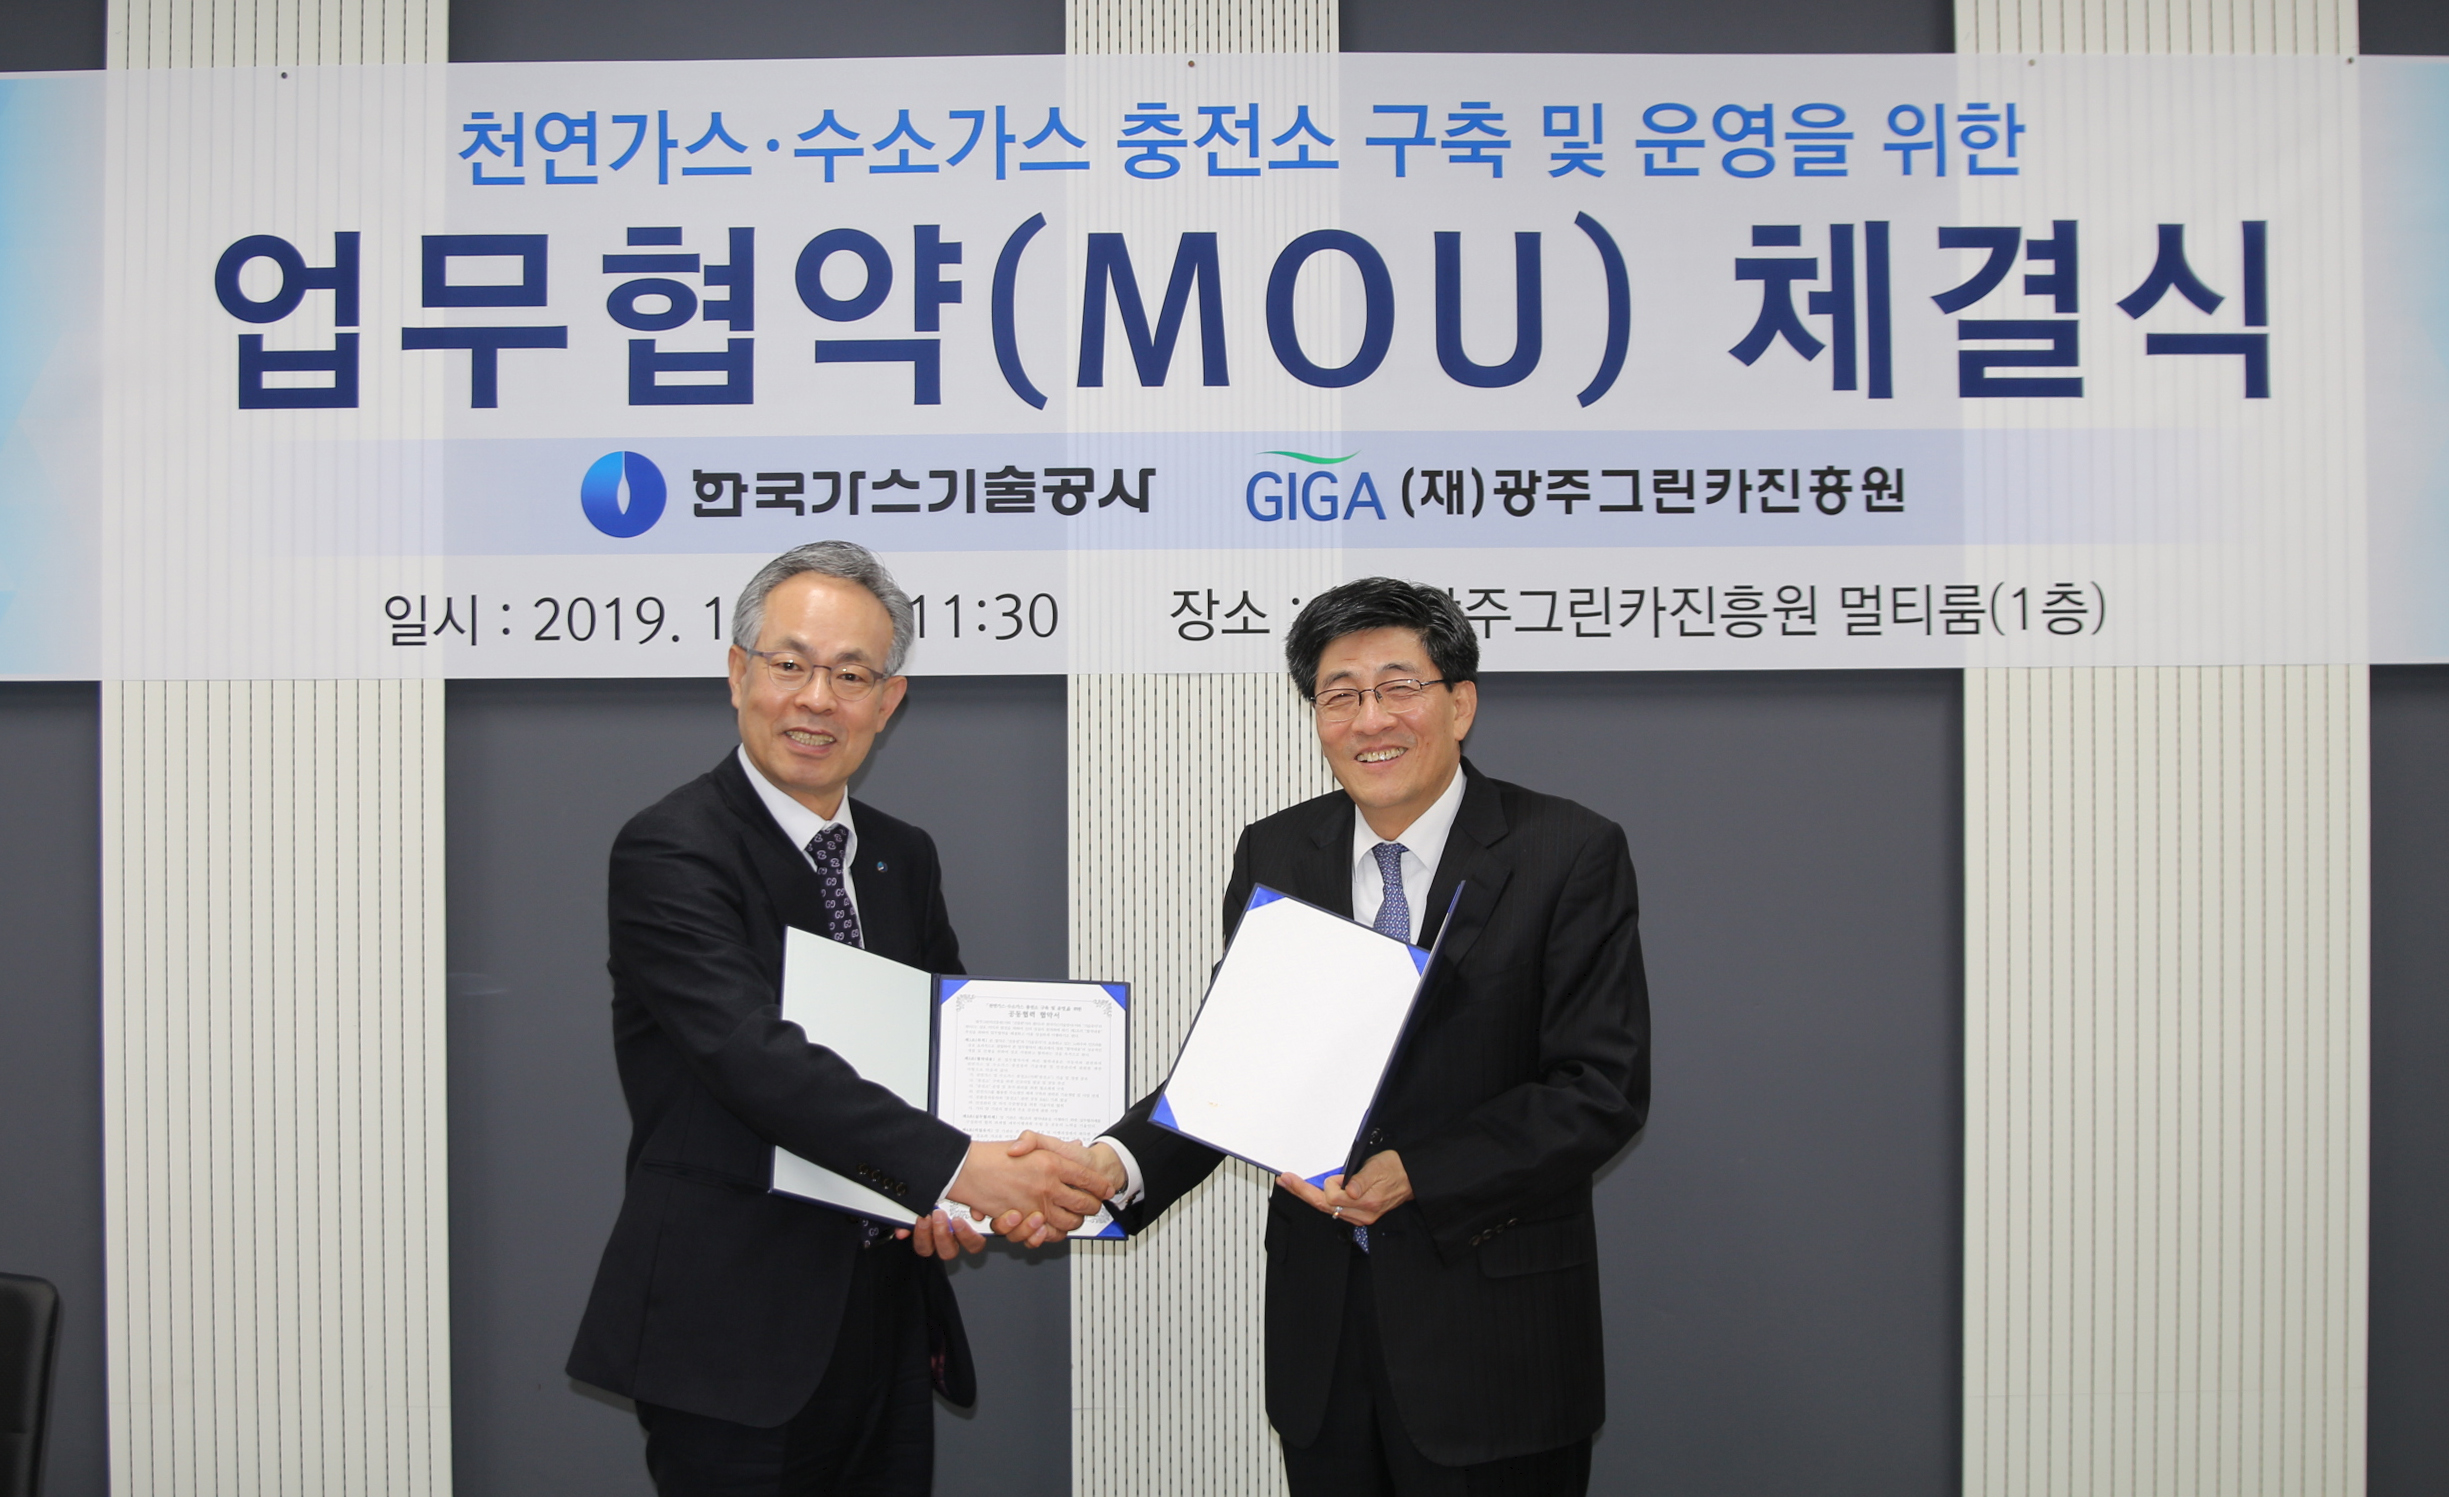 (재)광주그린카진흥원과「천연가스·수소가스 충전소 구축 및 운영」관련  공동협력(MOU) 협약서 체결